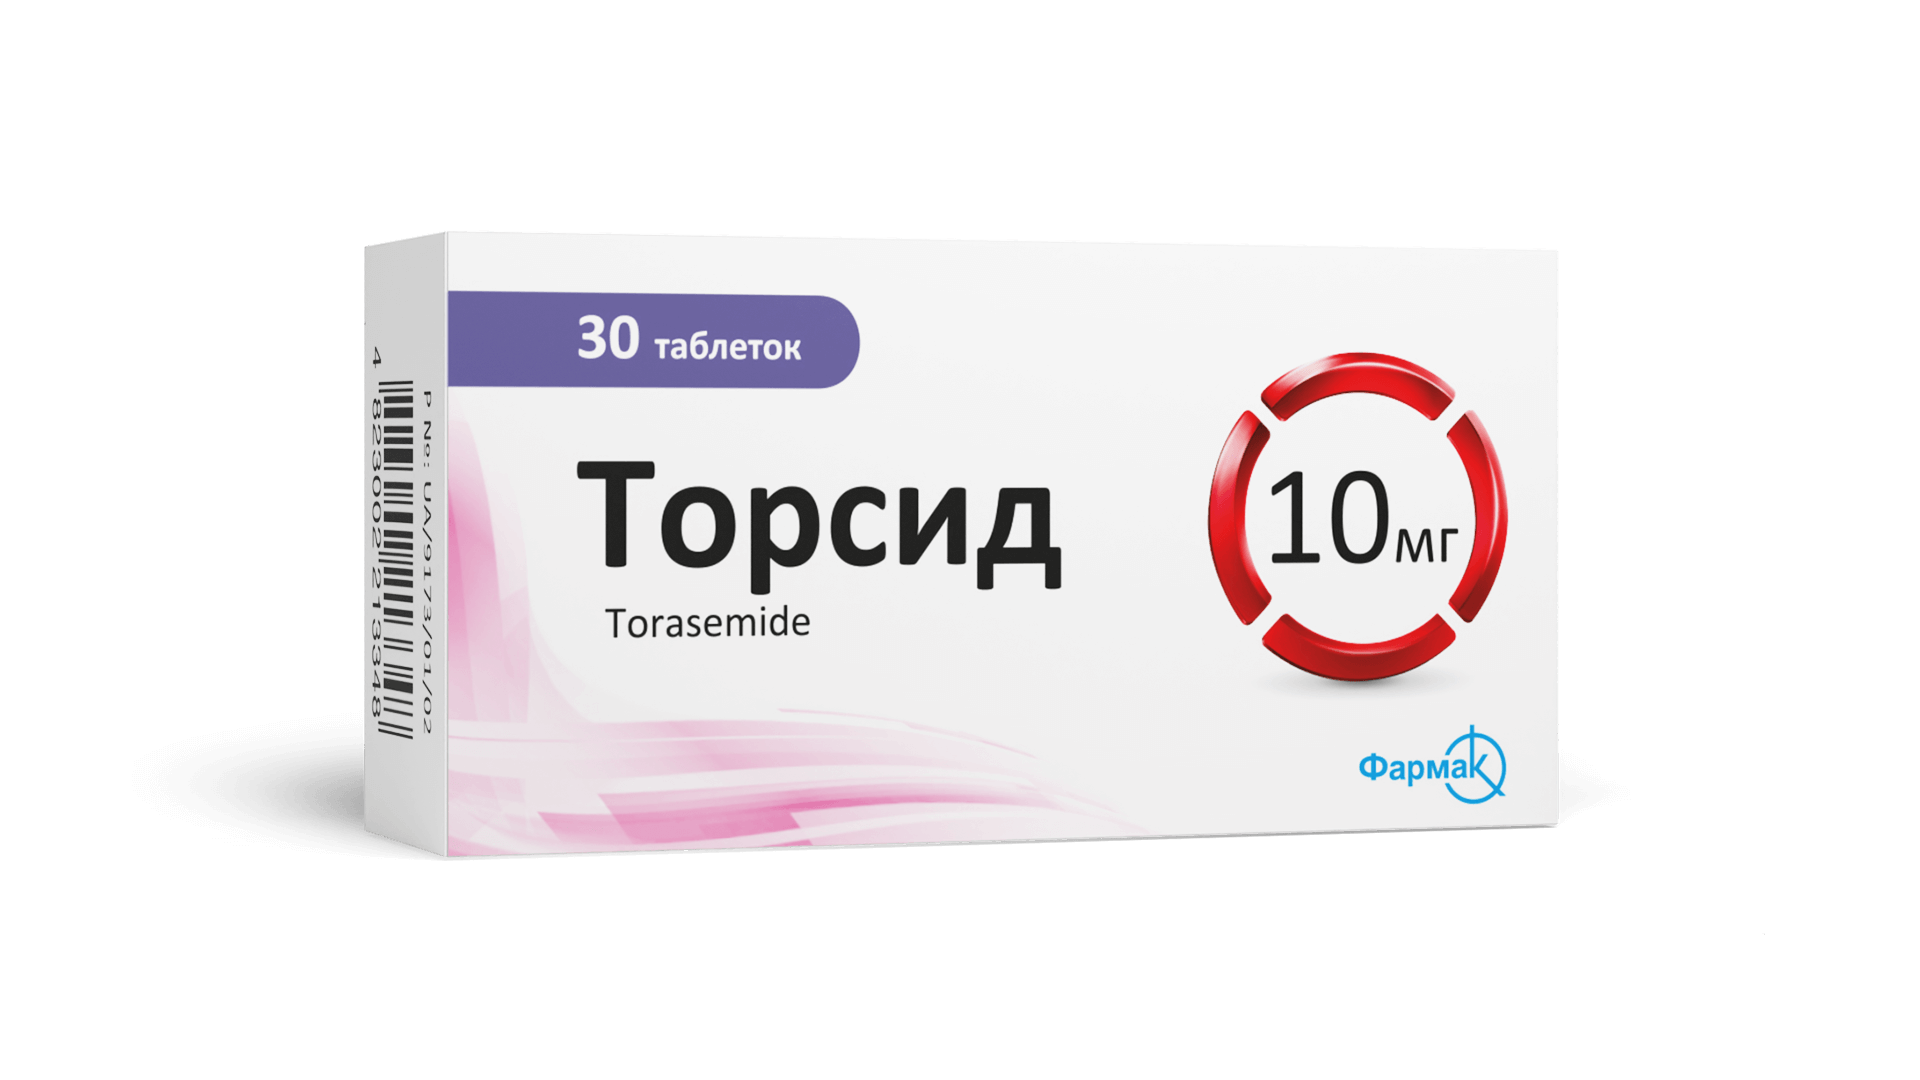 Торсид® (таблетки) 10 мг (1)